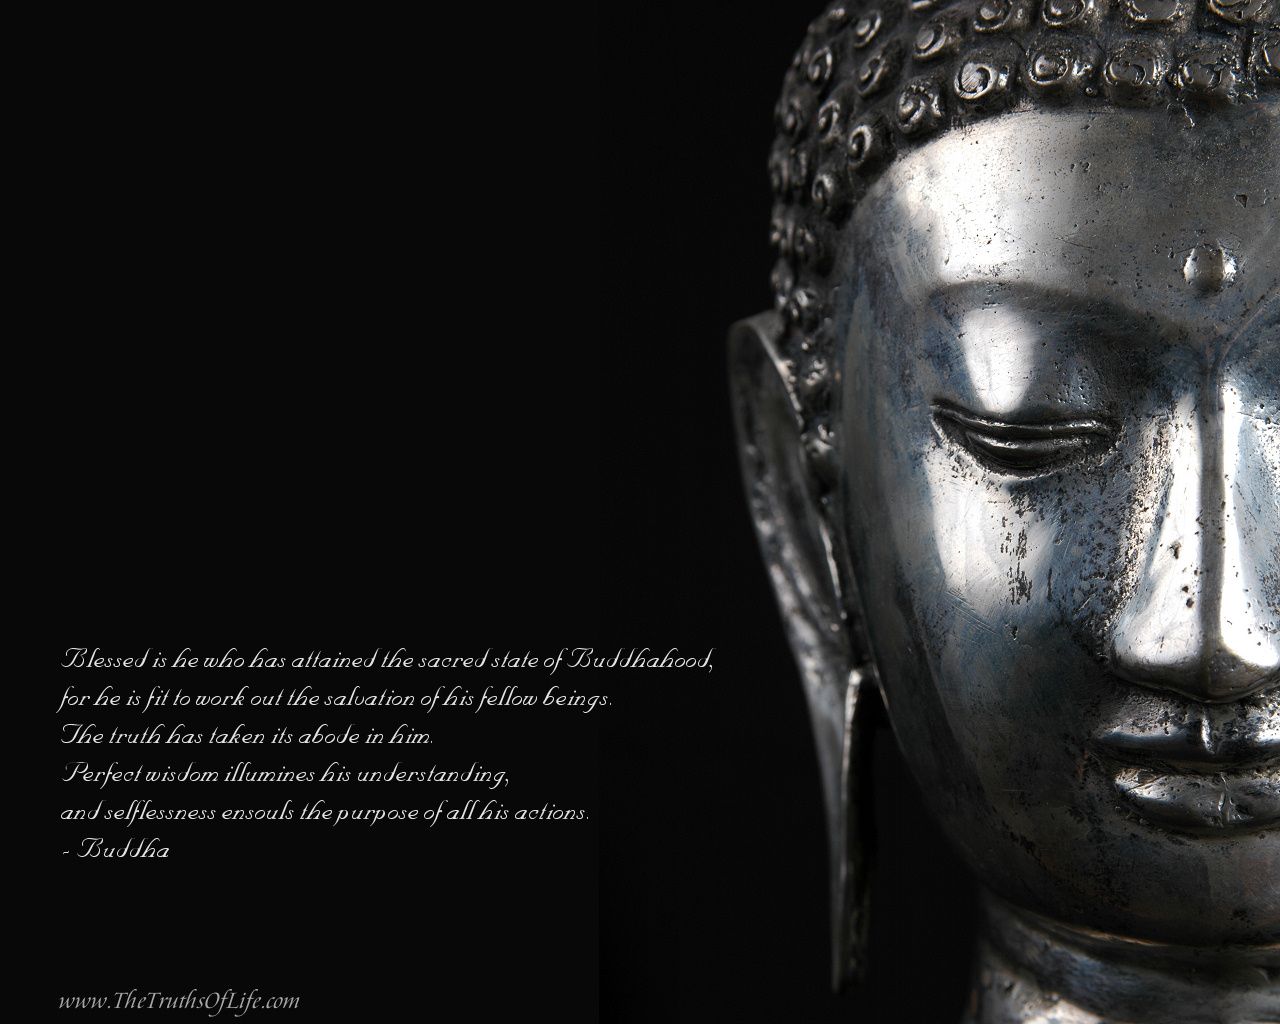 Buddhism Wallpapers - Buddhism, Buddhist, Buddha Wallpaper